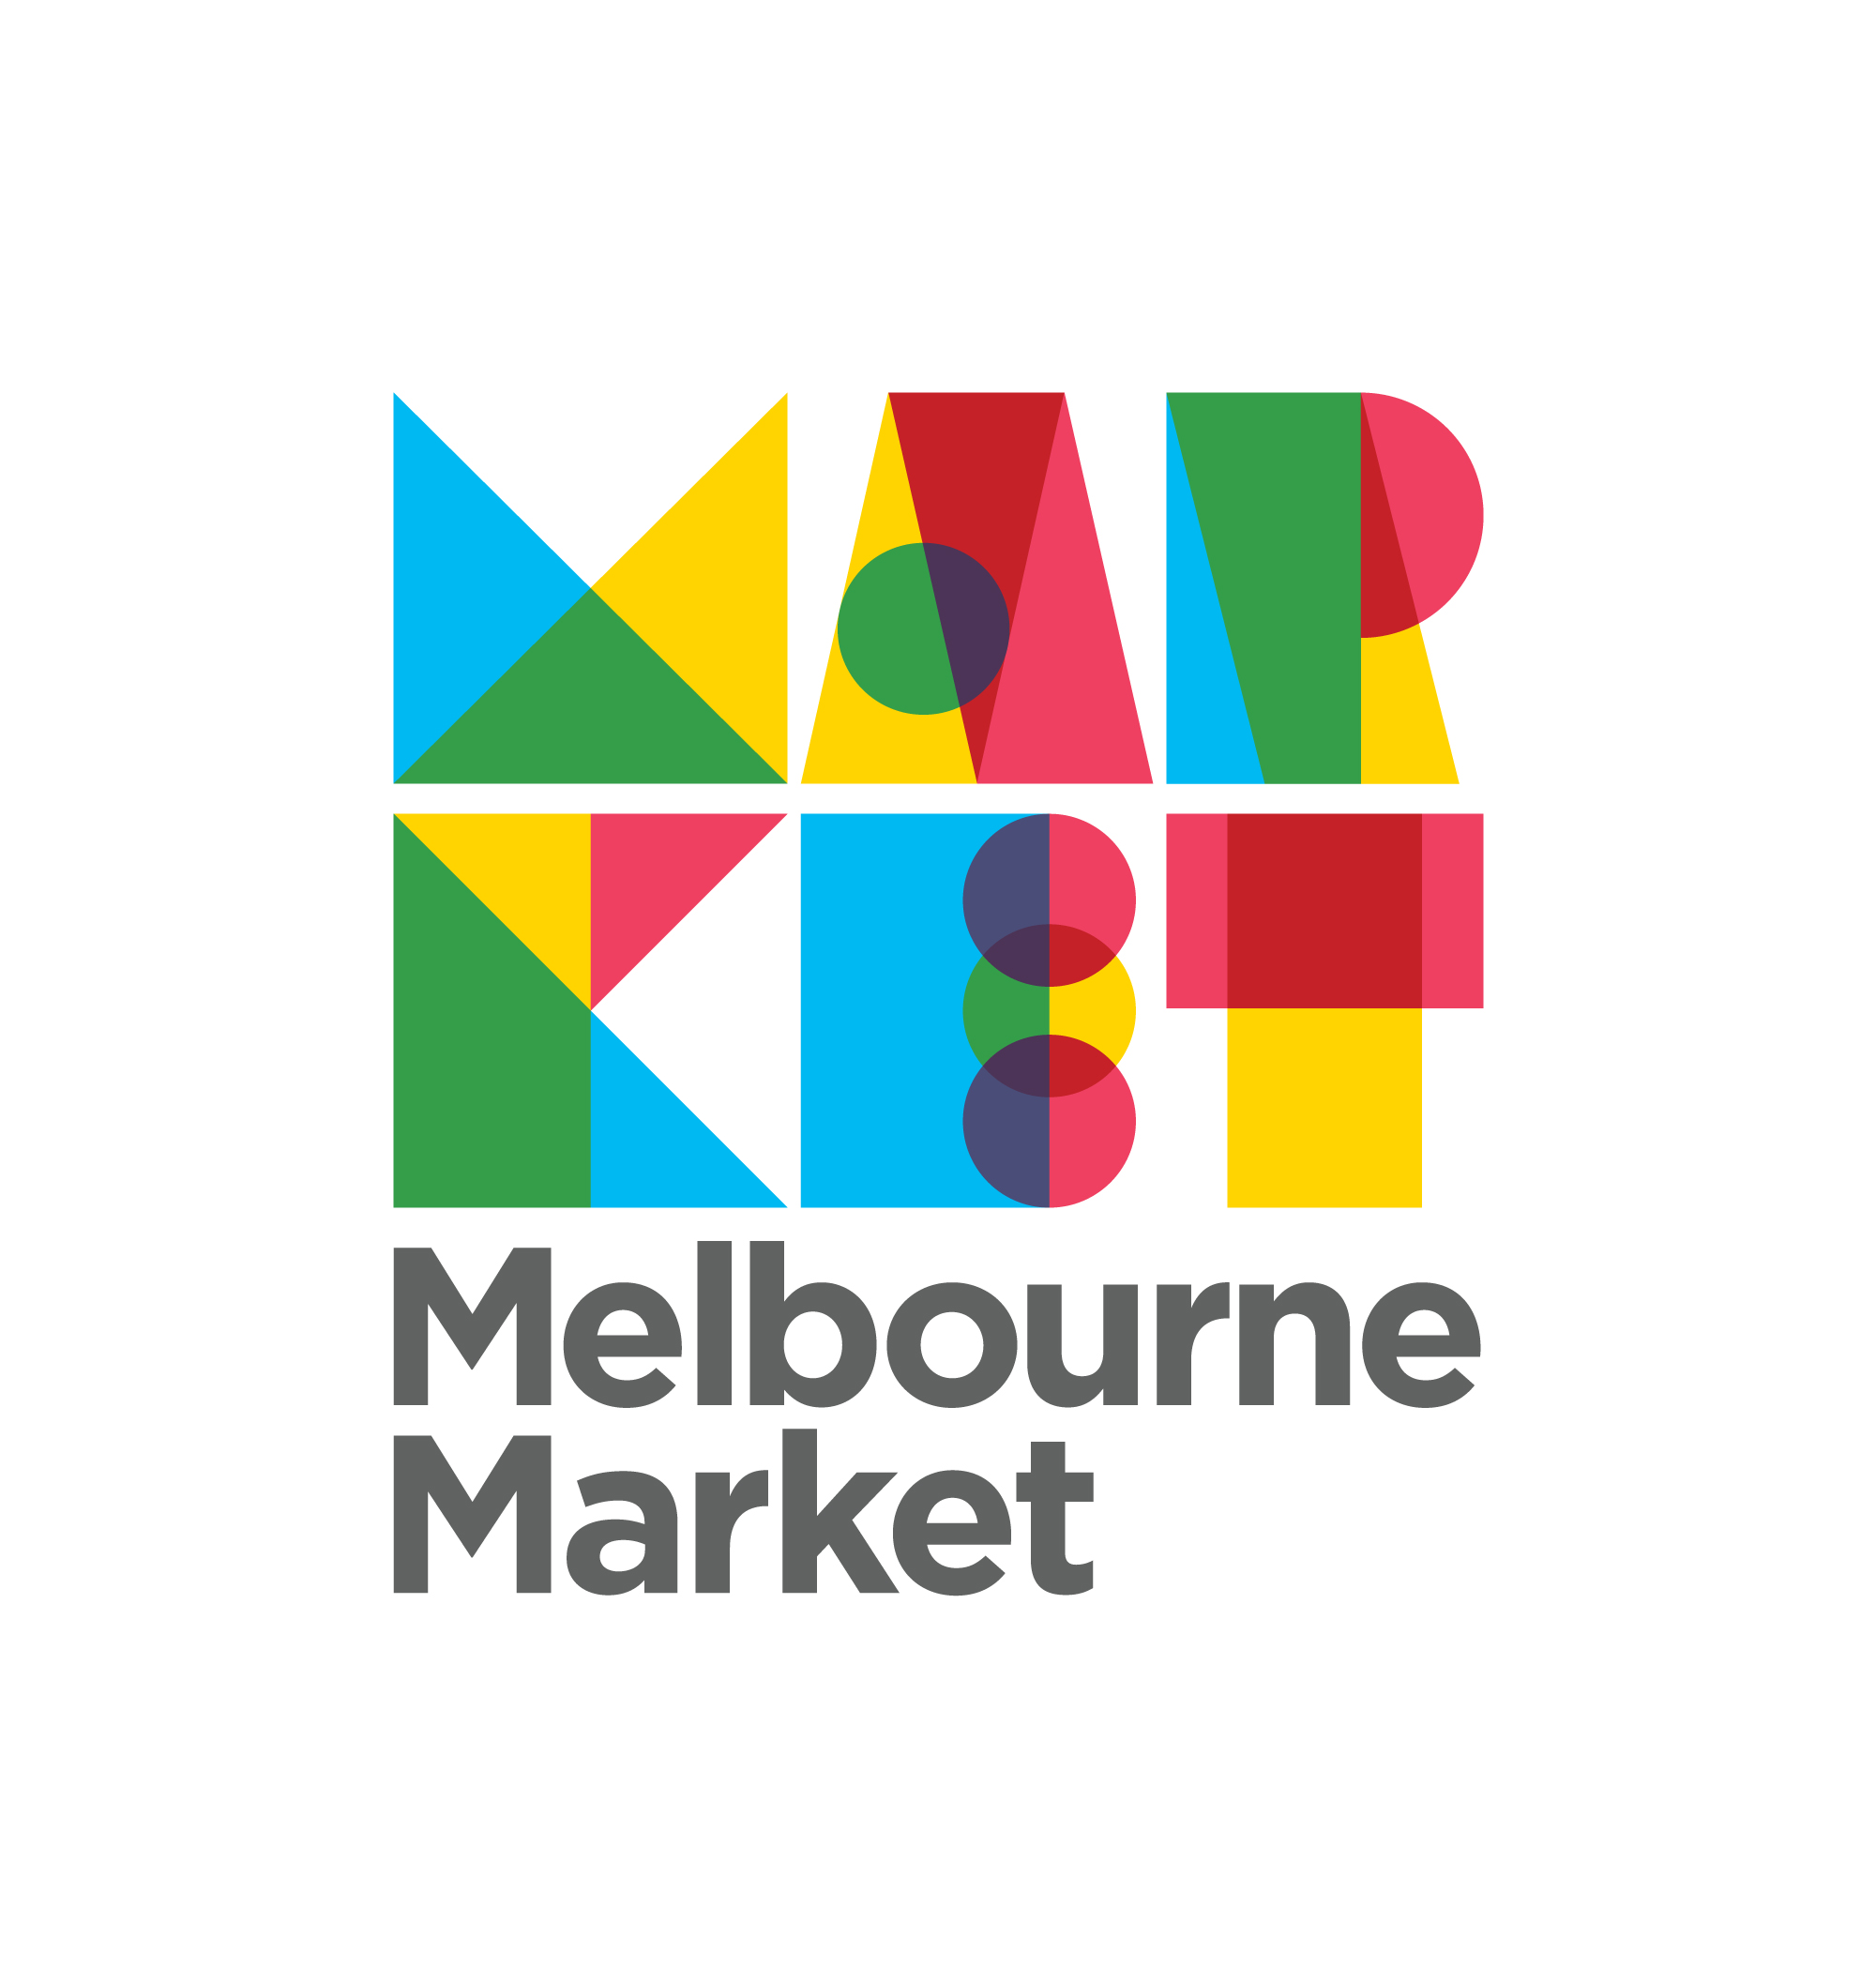 Melbourne Market